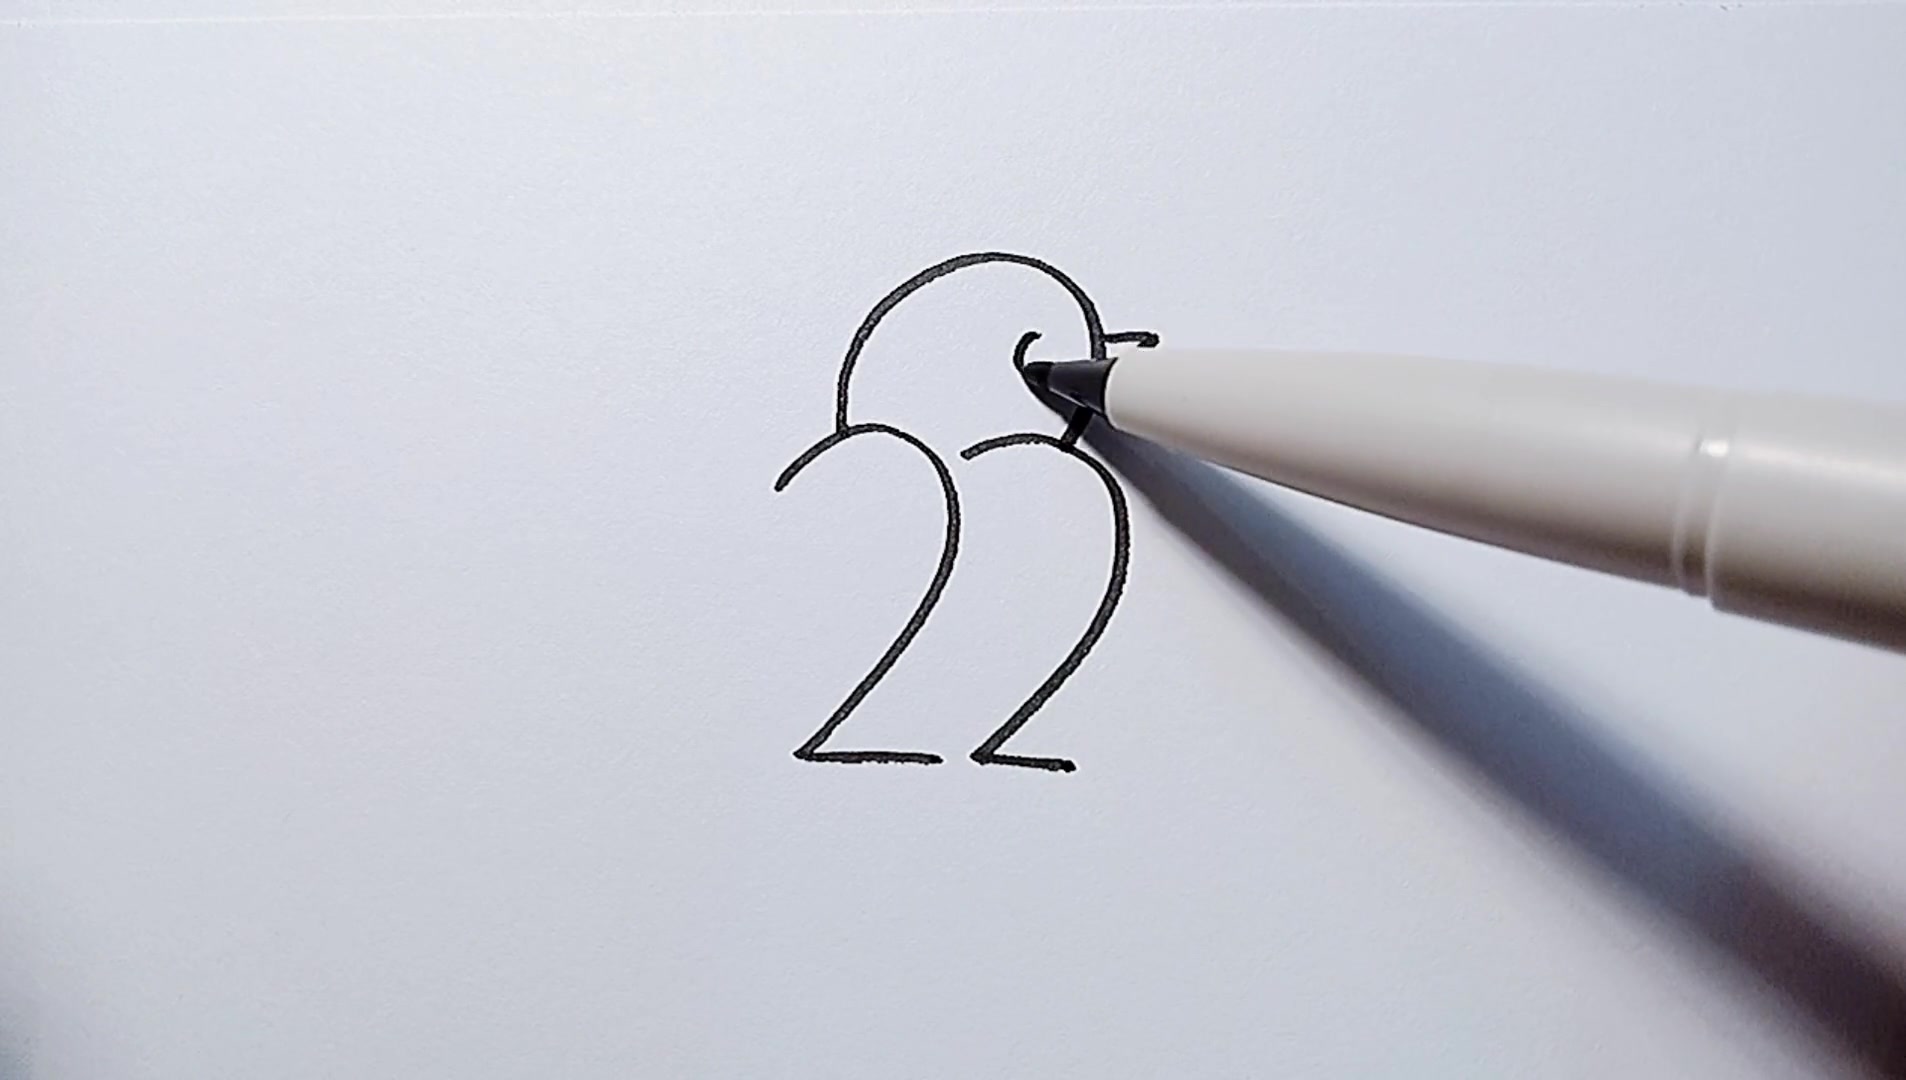 数字2画小鸟的画法图片